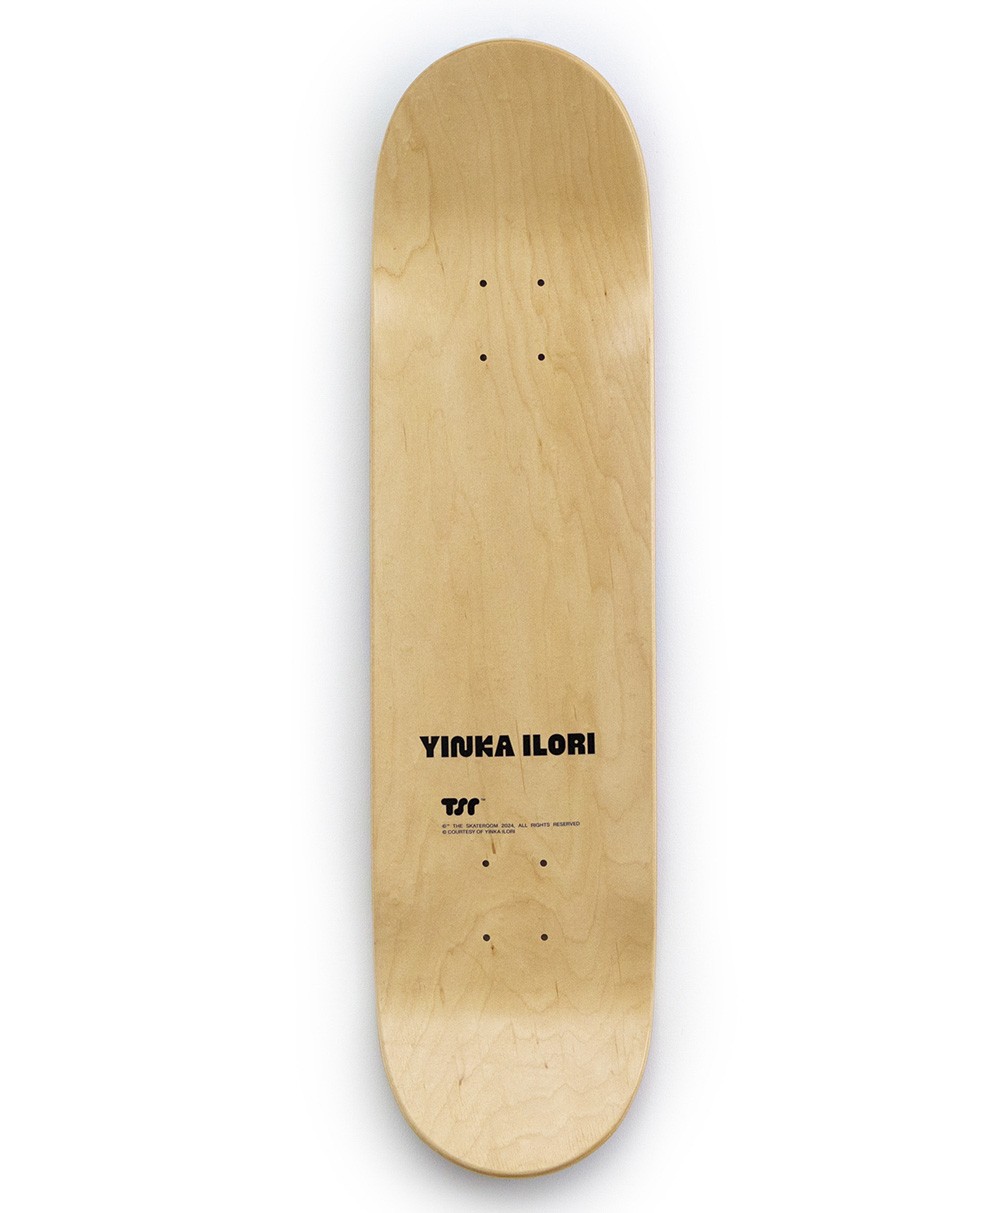 Dieses Produktbild zeigt das Skateboard Kunstobjekt x Yinka Ilori United we stand von The Skateroom im RAUM concept store.